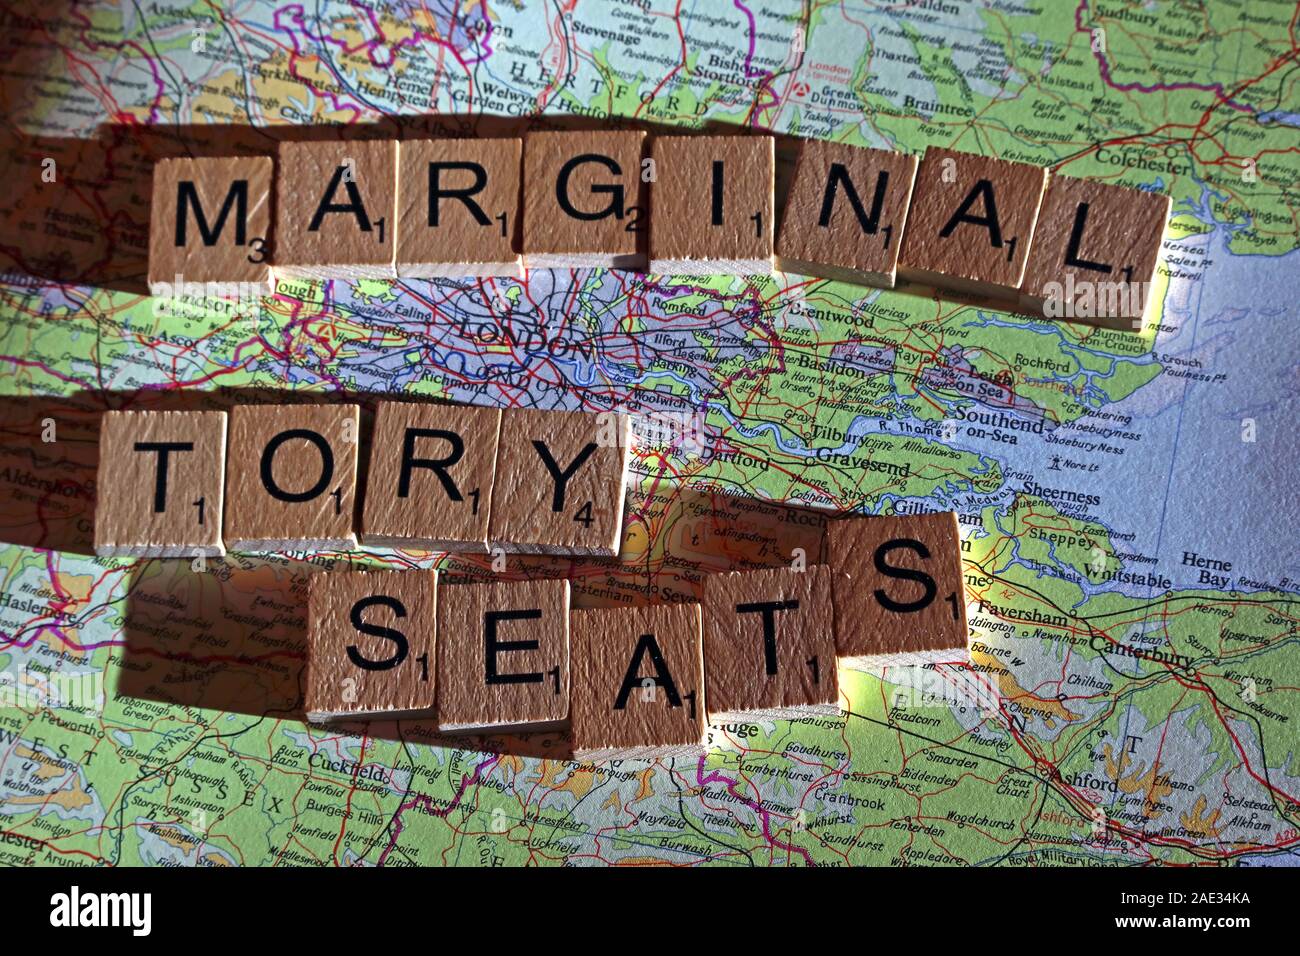 Sièges conservateurs marginal en épeautre lettres Scrabble sur une carte du Royaume-Uni - Générale, élections, partis politiques dirigeants,parties,demandes,des doutes, Banque D'Images